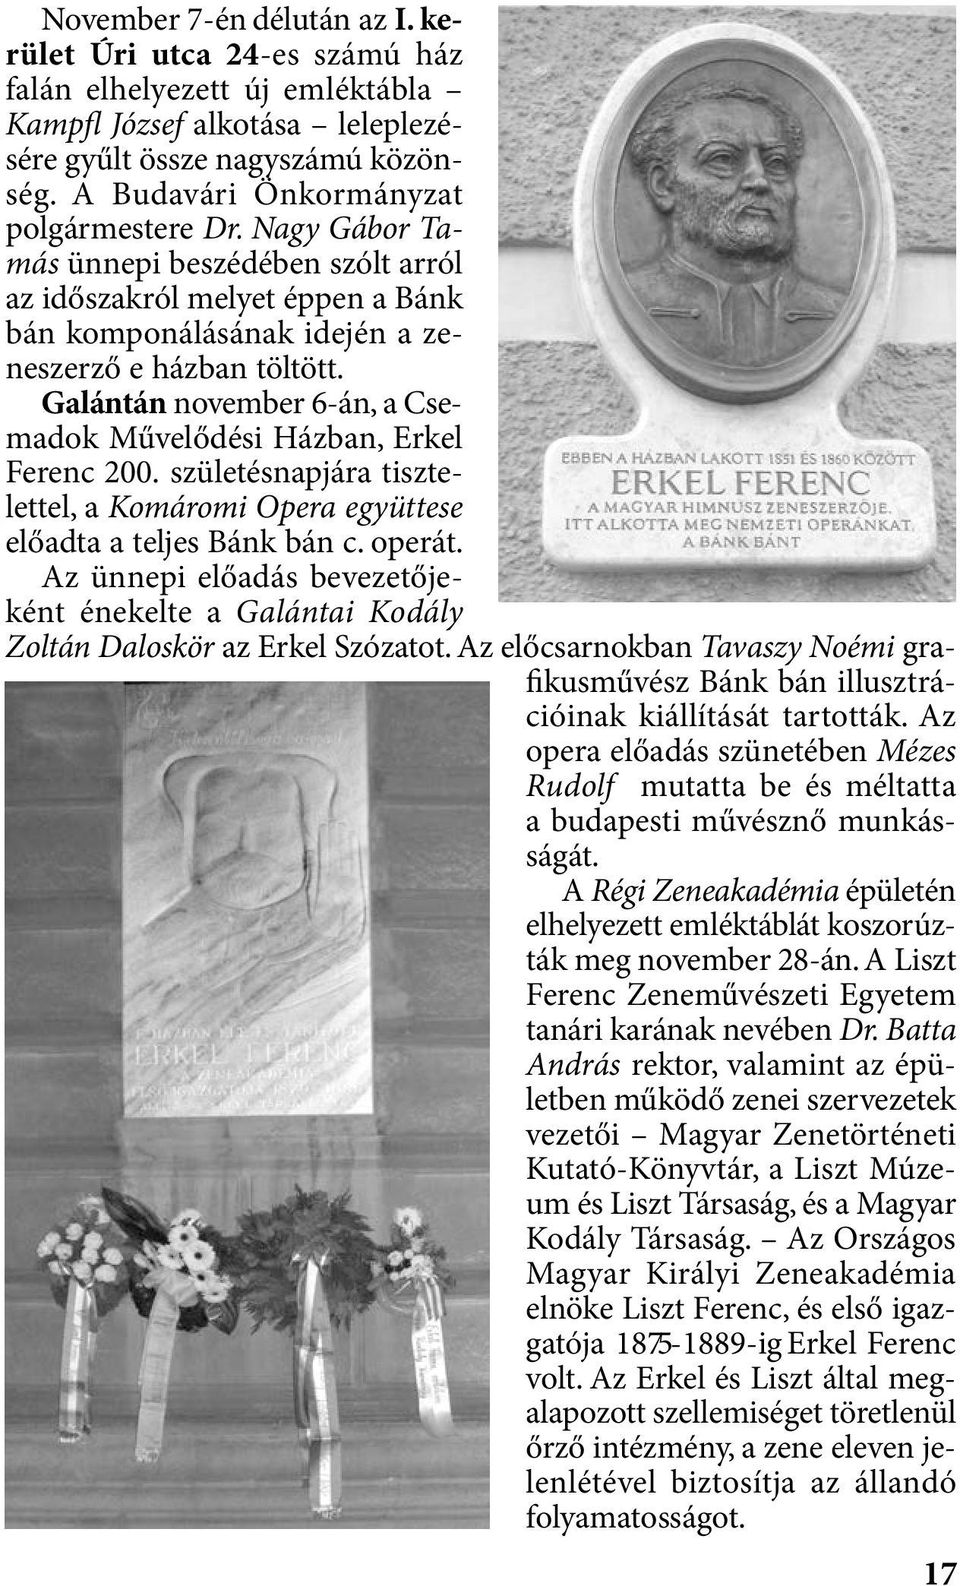 Galántán november 6-án, a Csemadok Művelődési Házban, Erkel Ferenc 200. születésnapjára tisztelettel, a Komáromi Opera együttese előadta a teljes Bánk bán c. operát.